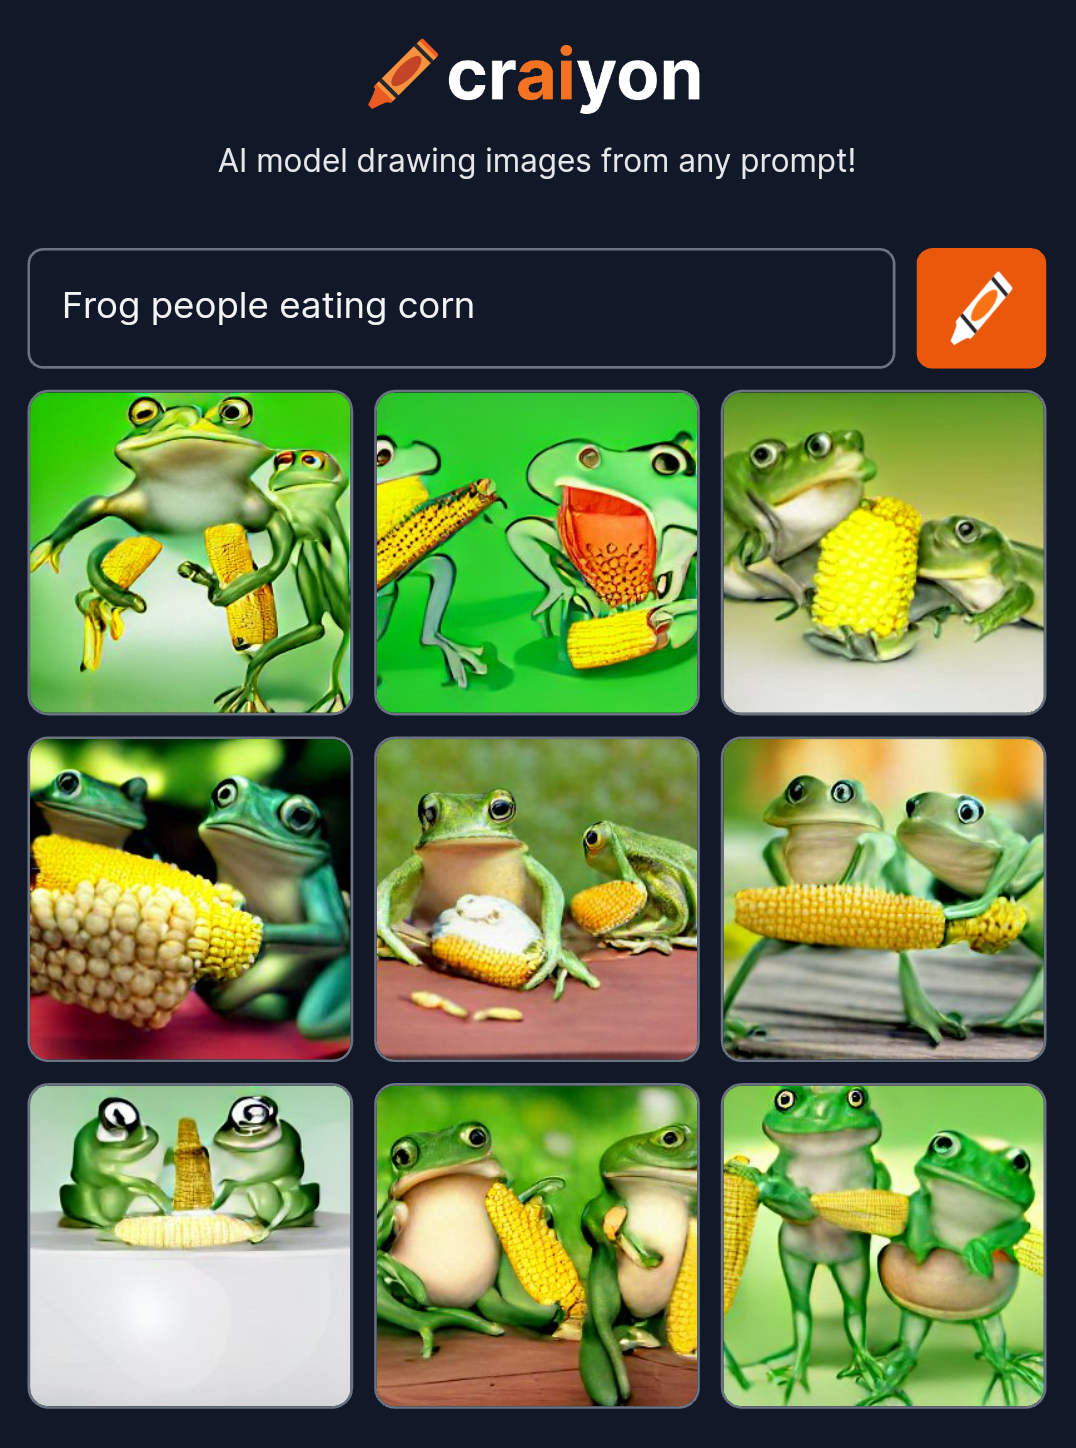 craiyon_120812_Frog_people_eating_corn.png